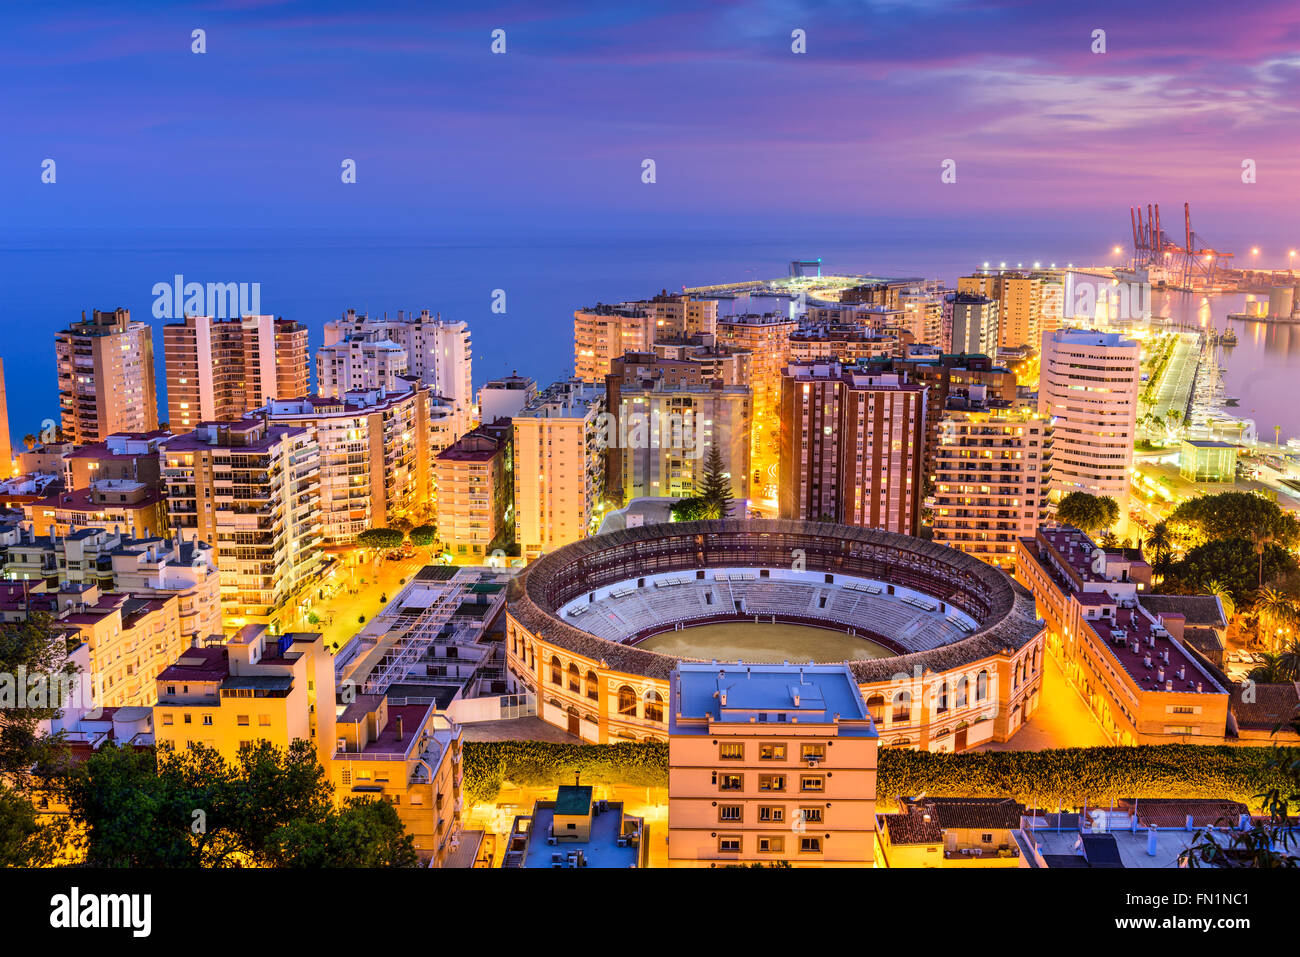 Malaga, Espagne skyline vers la mer Méditerranée. Banque D'Images